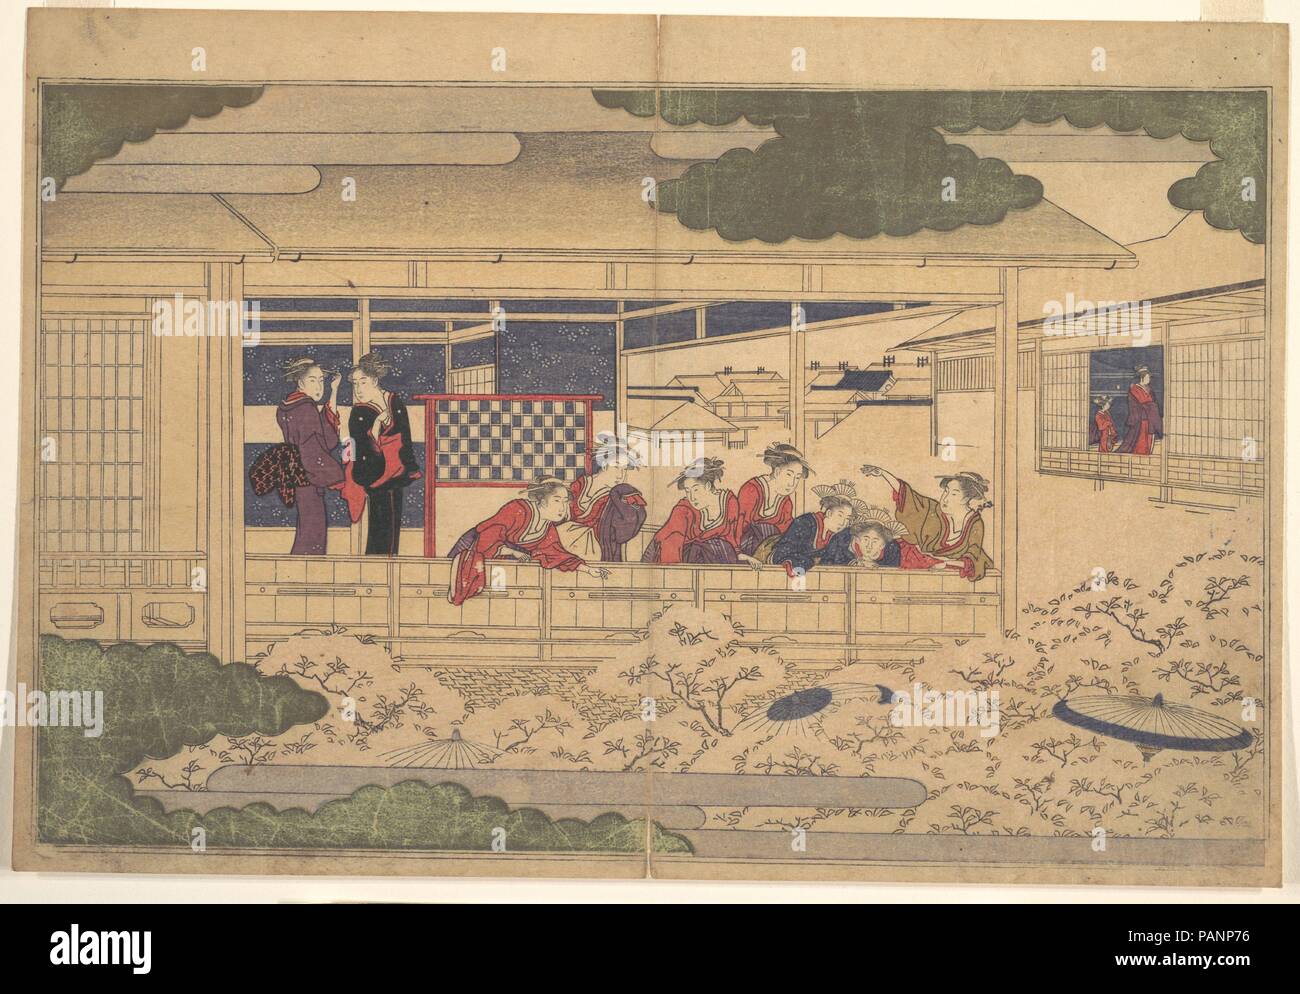 Anzeigen von Kirschblüten. Artist: Kitagawa Utamaro (Japanisch, Ca. 1754-1806). Kultur: Japan. Abmessungen: Bild: 8 7/8 in. X 14 in. (22,5 × 35,6 cm). Datum: 1790. In Zeiten der Beobachter ist das Hauptthema. In diesem Blatt aus einem Buch von Utamaro, eine lebendige Gruppe von Frauen nimmt in den Blick von einem Balkon im Stadtteil Yoshiwara. Sie gegen das Geländer Masse, einige über lehnte sich anrufen, um die unten. Die Objekte Ihrer Aufmerksamkeit kann nicht gesehen, doch ihre Präsenz ist durch die Sonnenschirme, dass Bob unter dem Meer von blühenden Bäumen im Vordergrund angezeigt. Diese Darstellung kann eine humorvolle Spielen o Stockfoto